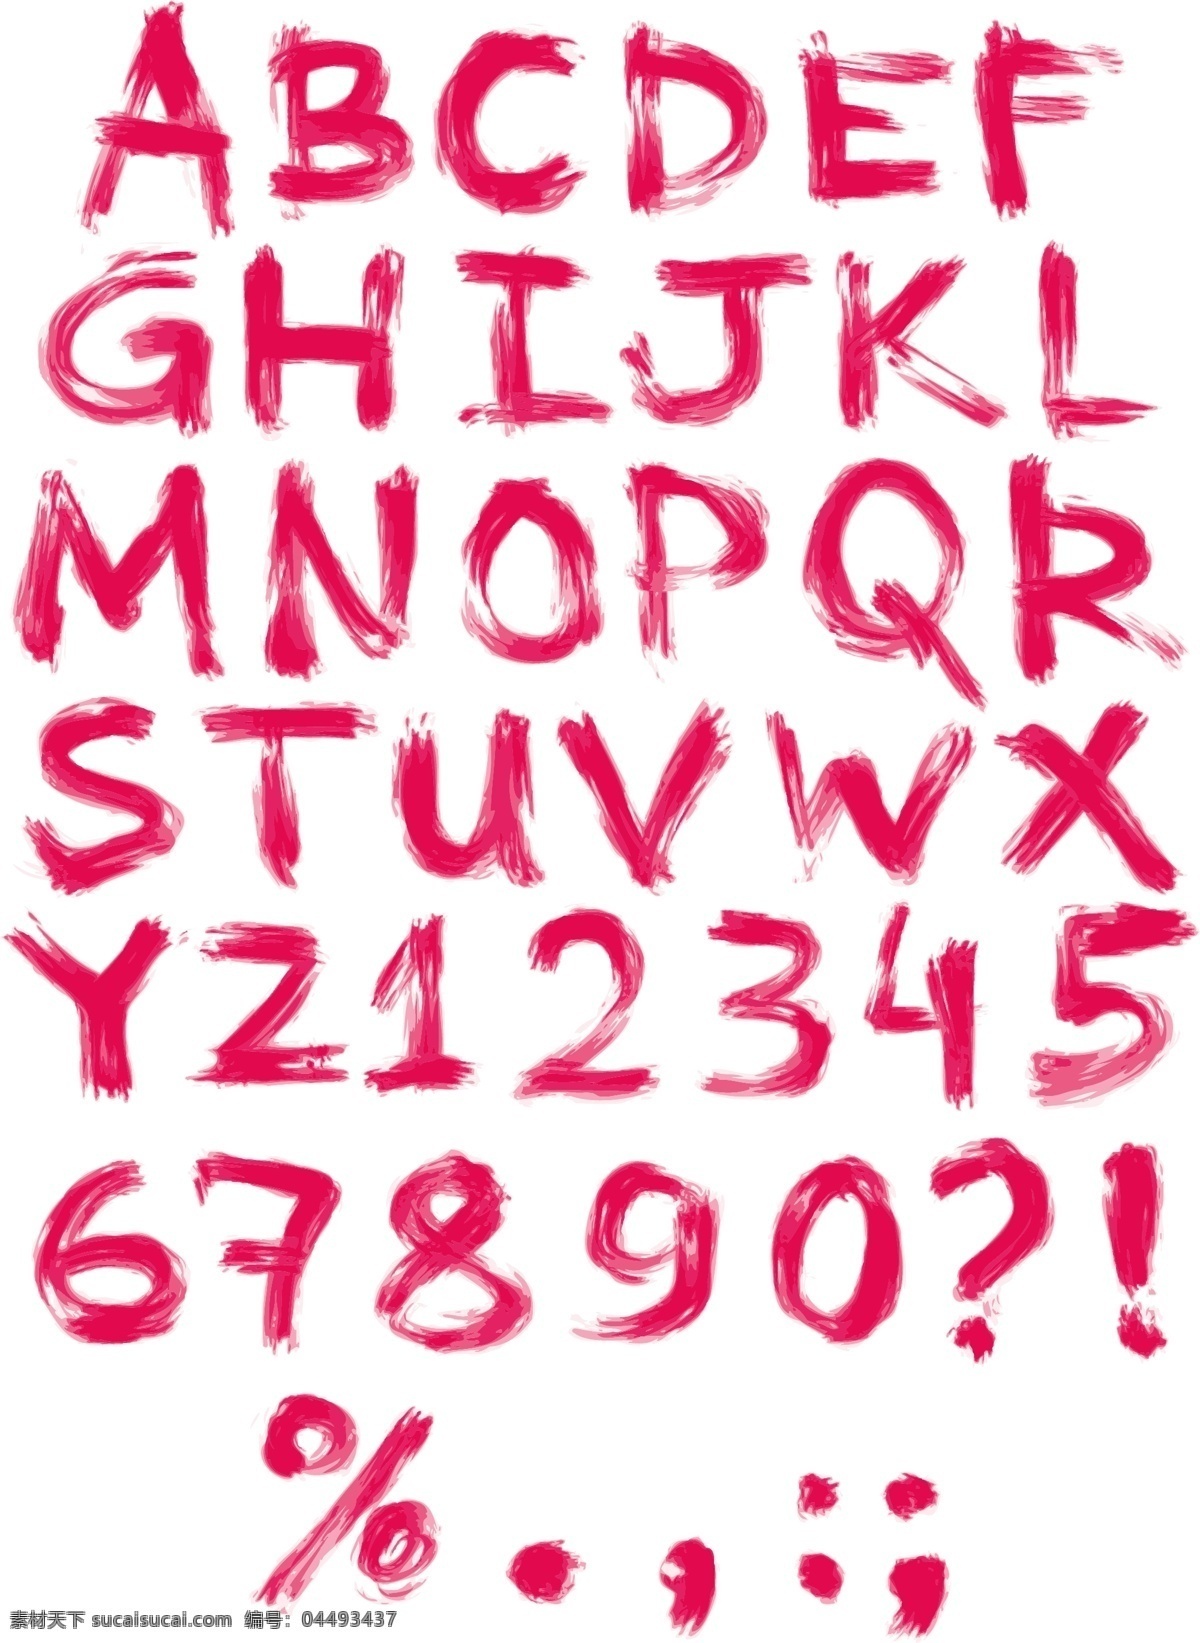 字母设计 英文字母 水墨字母 水彩 数字 手绘字母 拼音 创意字母 矢量